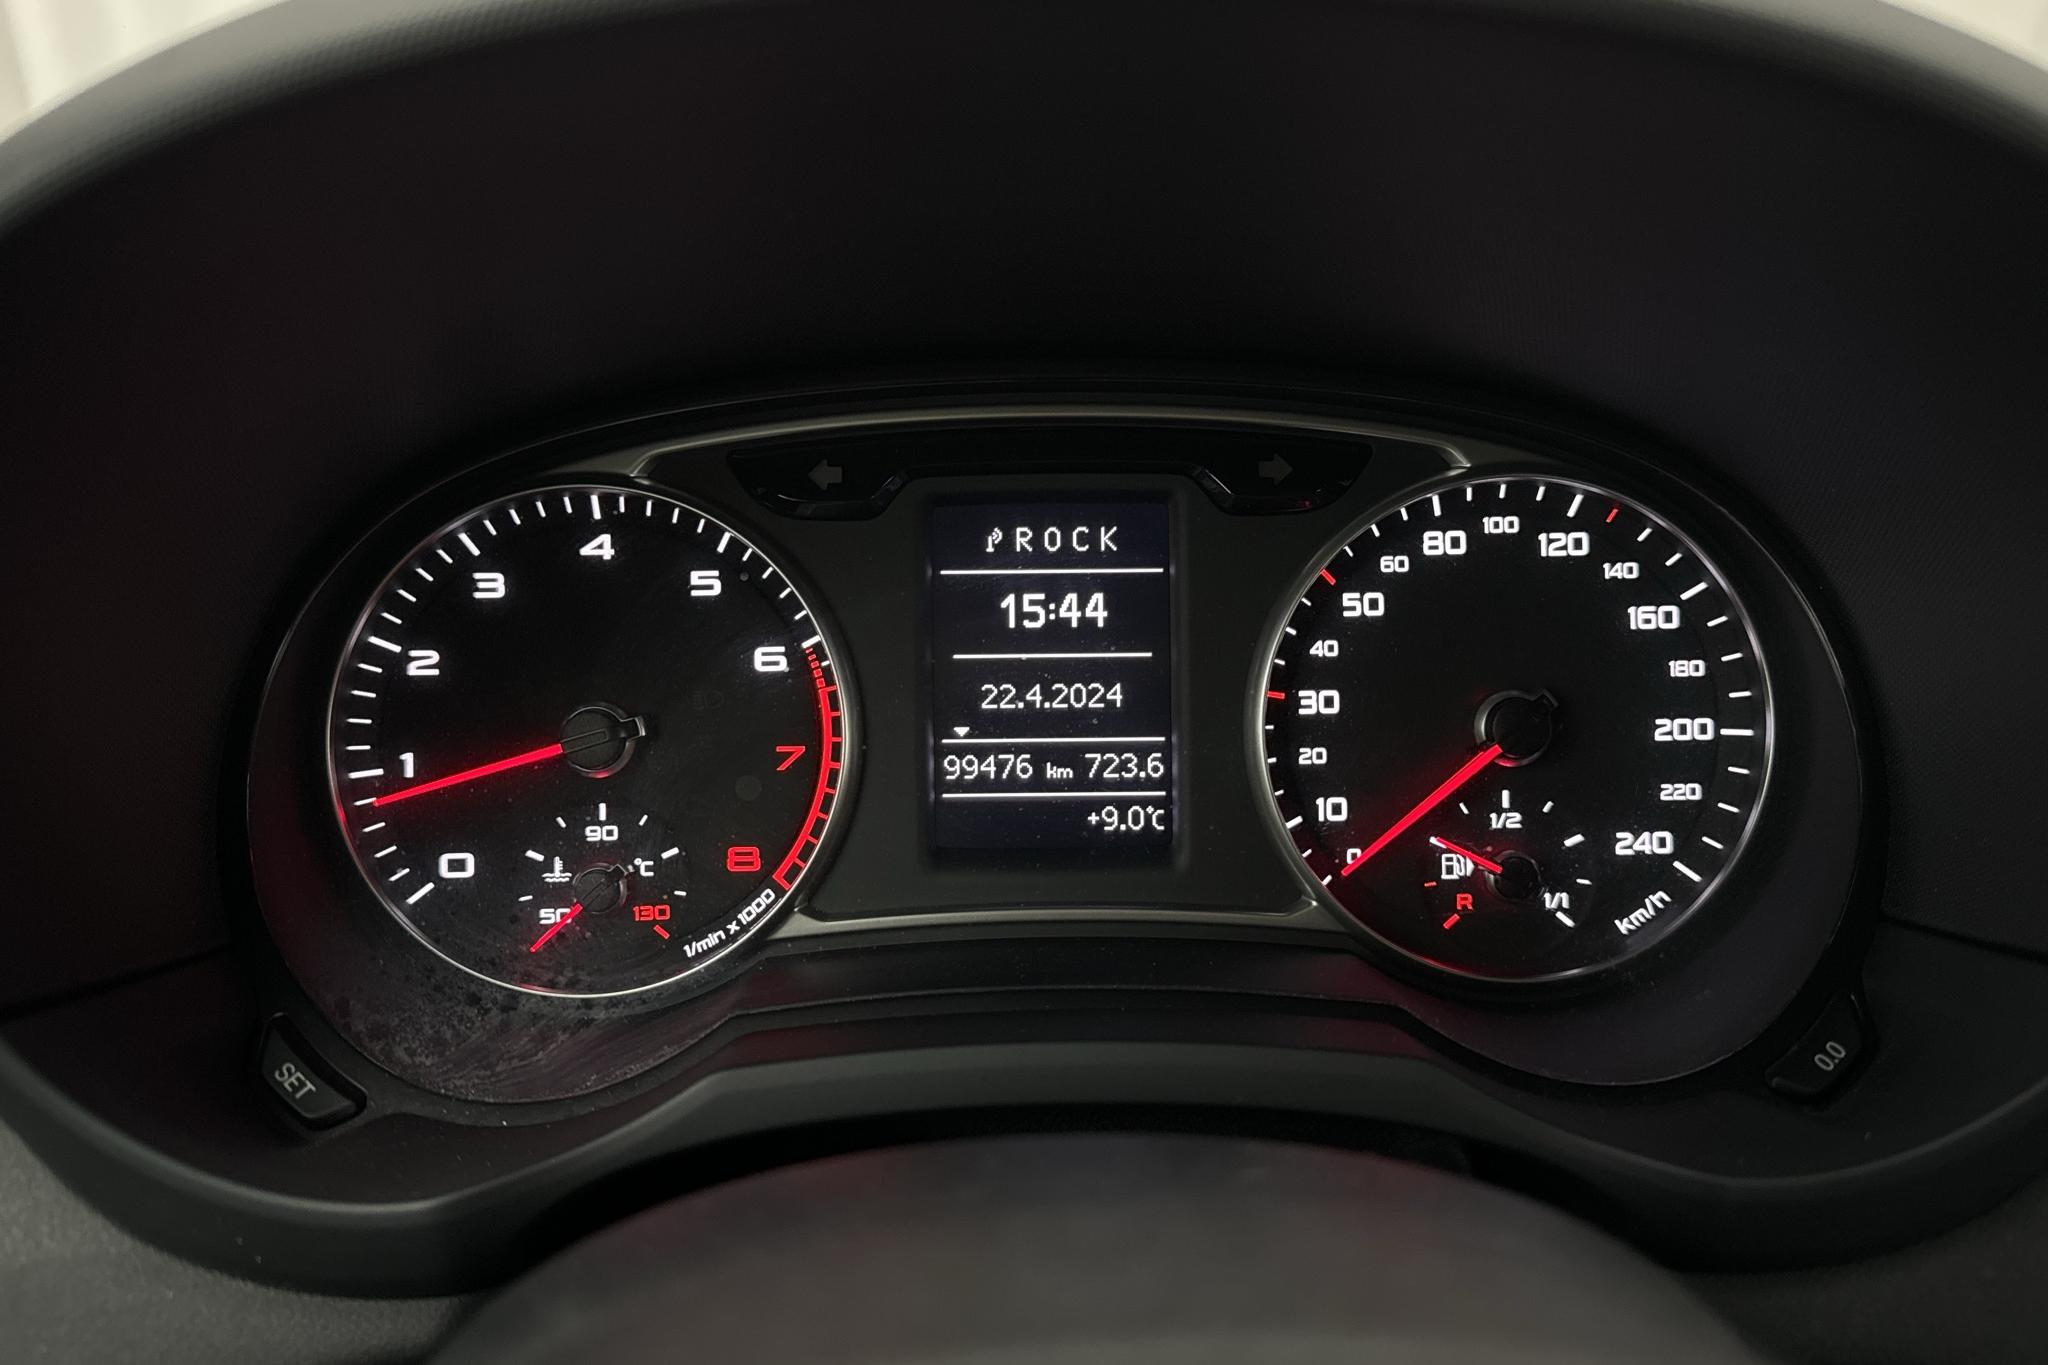 Audi A1 1.2 TFSI Sportback (86hk) - 99 480 km - Manual - white - 2014